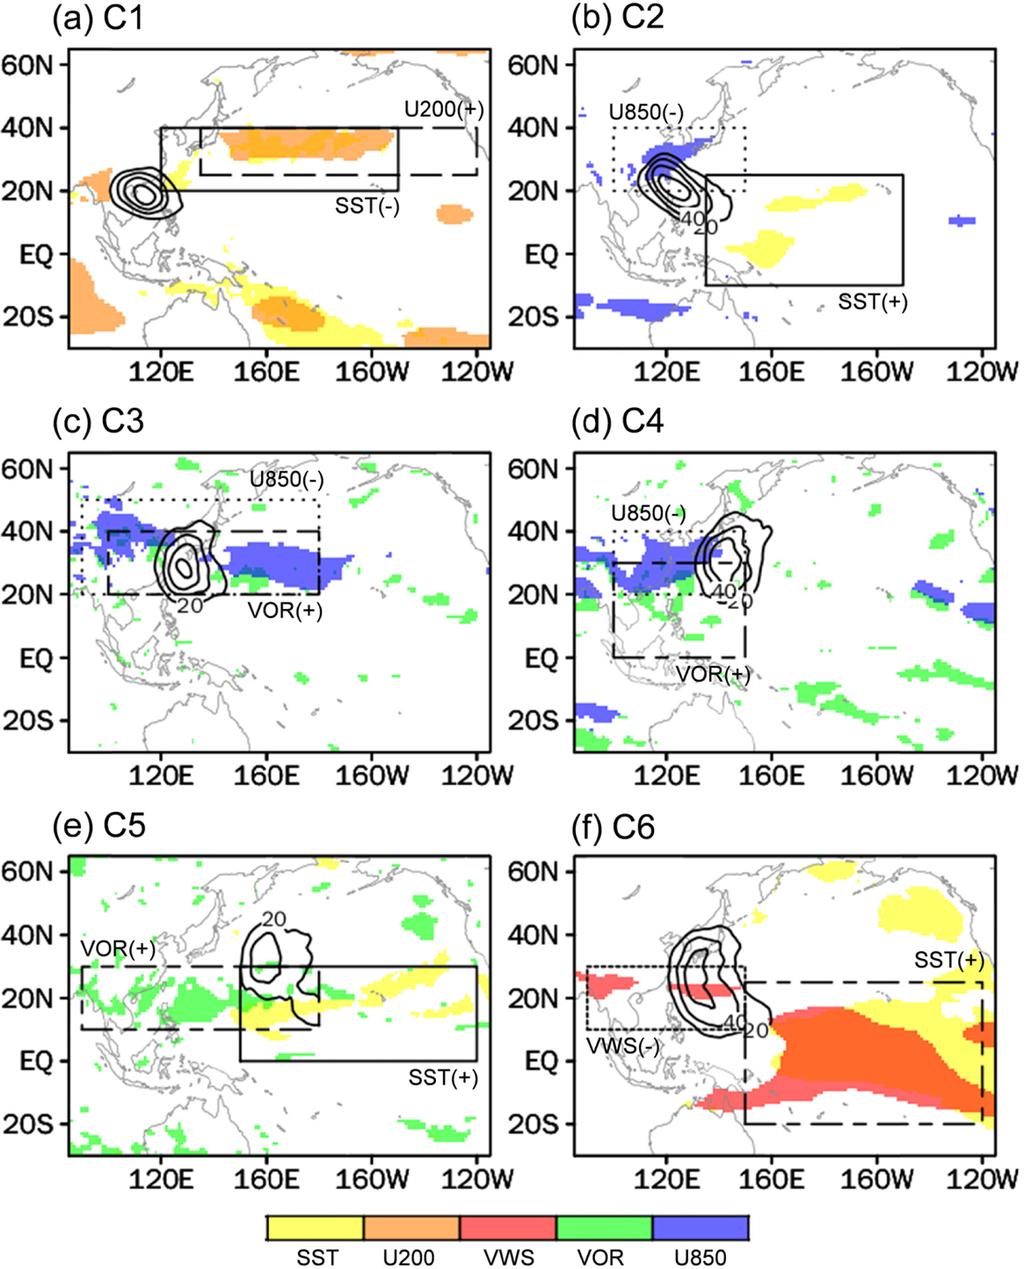 568 북서태평양 태풍의 여름과 가을철 예측시스템 개발과 한반도 영향 태풍 예측에 활용 도를 생산한다.